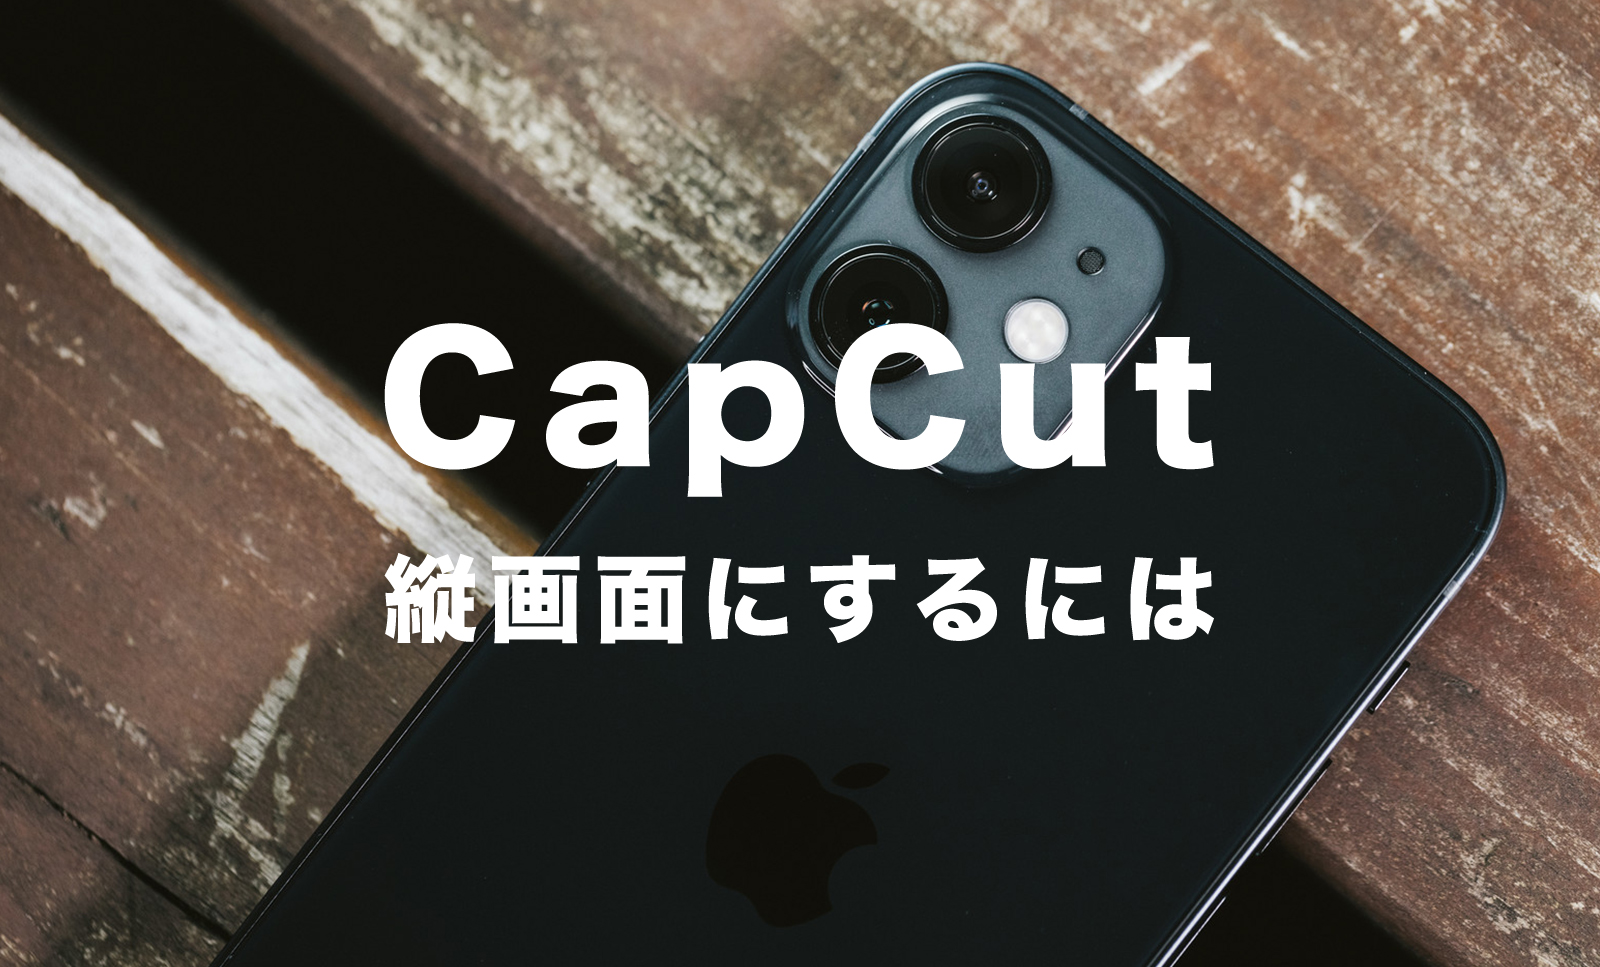 CapCut(キャップカット)で縦画面にする方法&やり方を解説【縦動画】のサムネイル画像